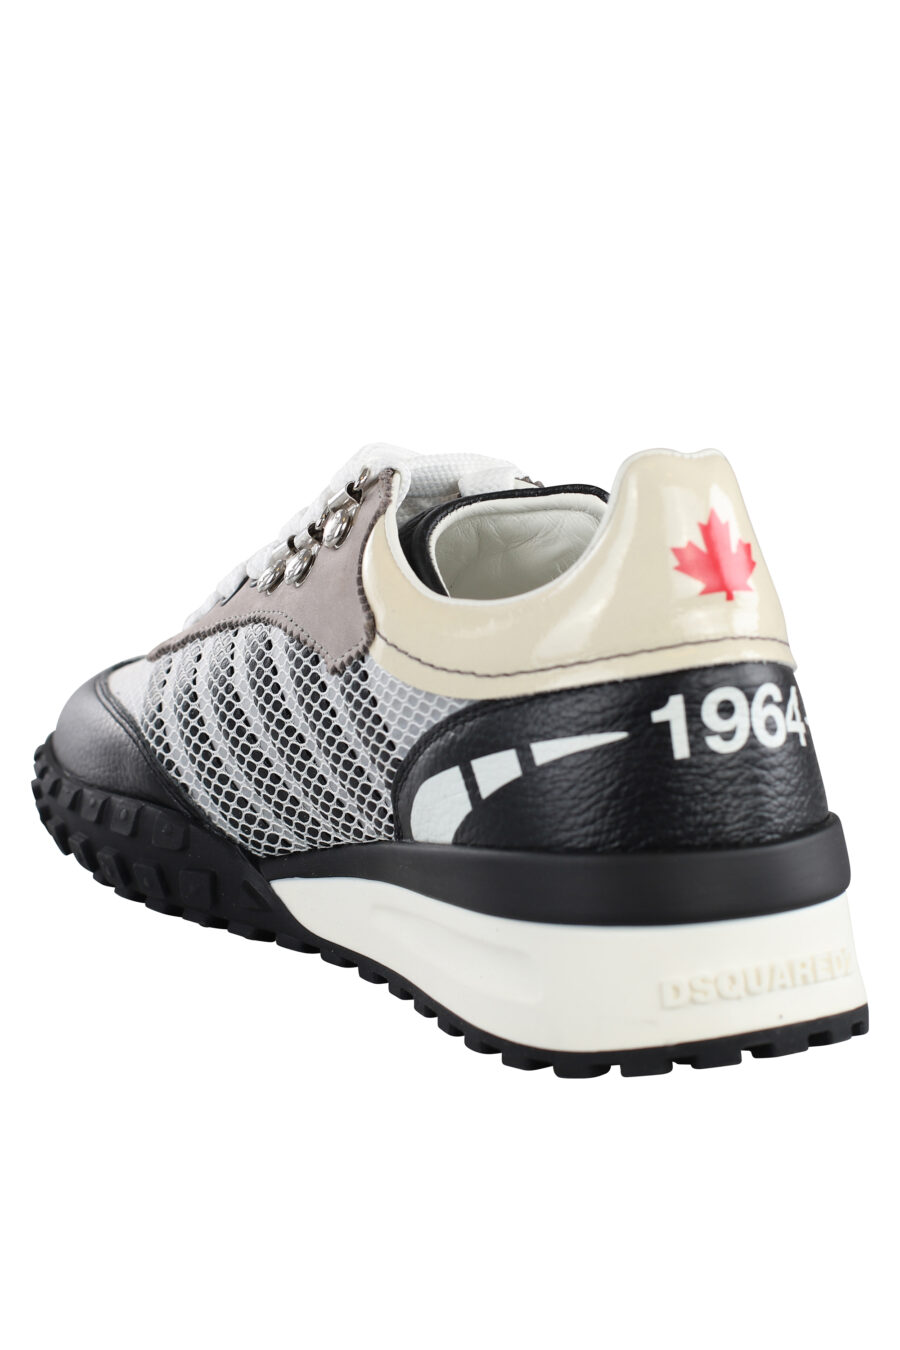 Zapatillas blancas y grises con lineas grises - IMG 7154